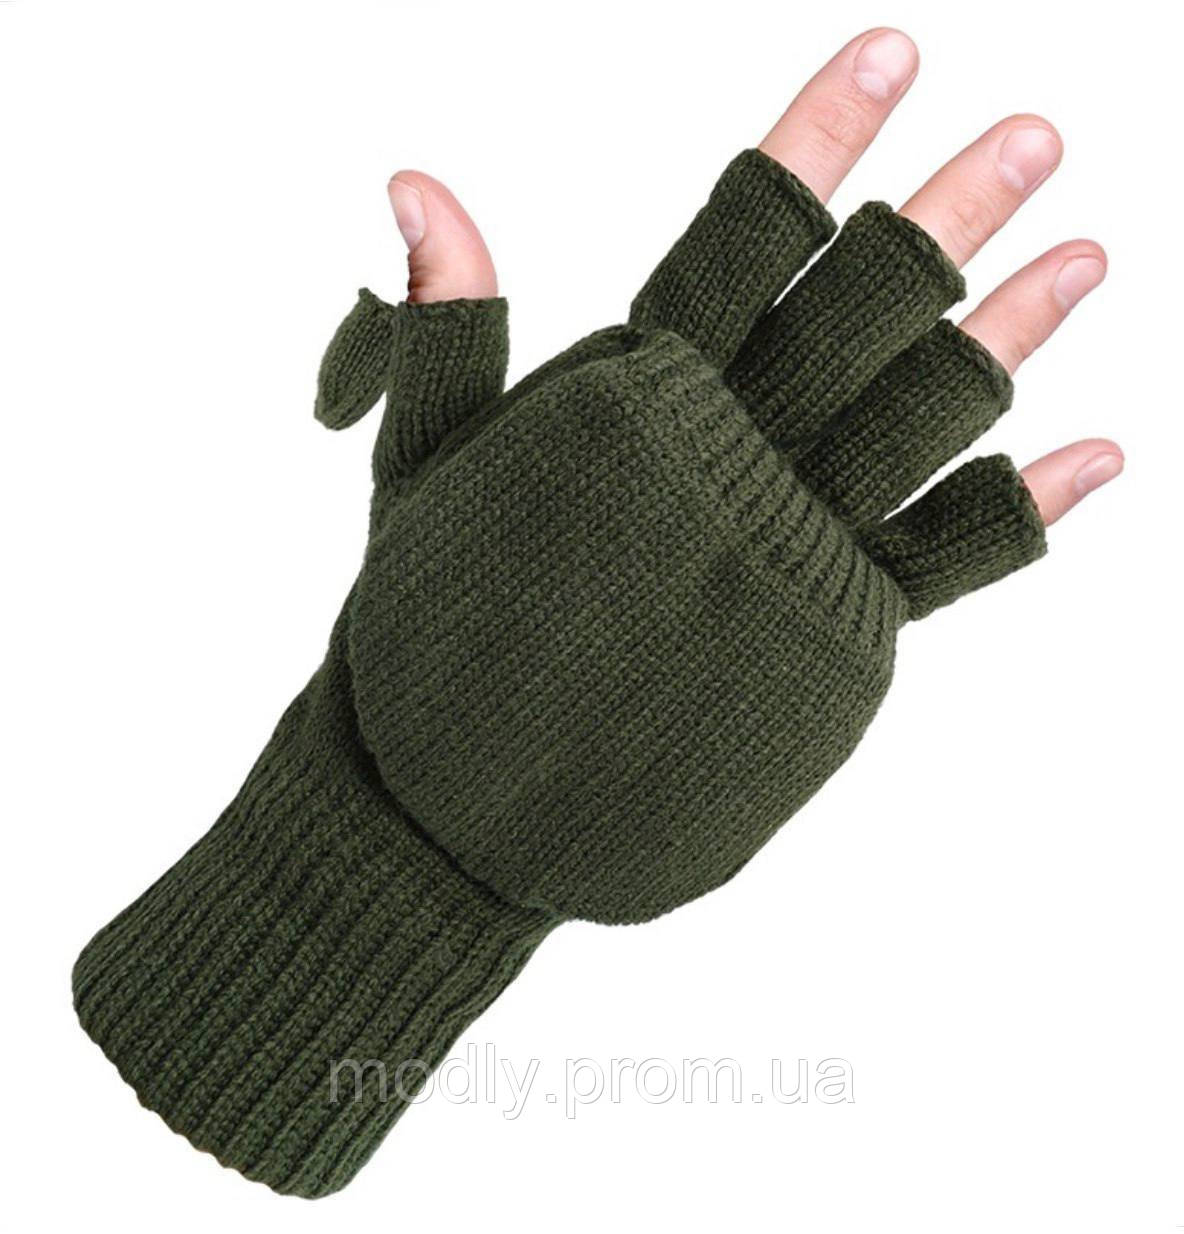 Рукавиці рукавиці Mil-Tec зимові олива M THINSULATE MY, код: 7772607